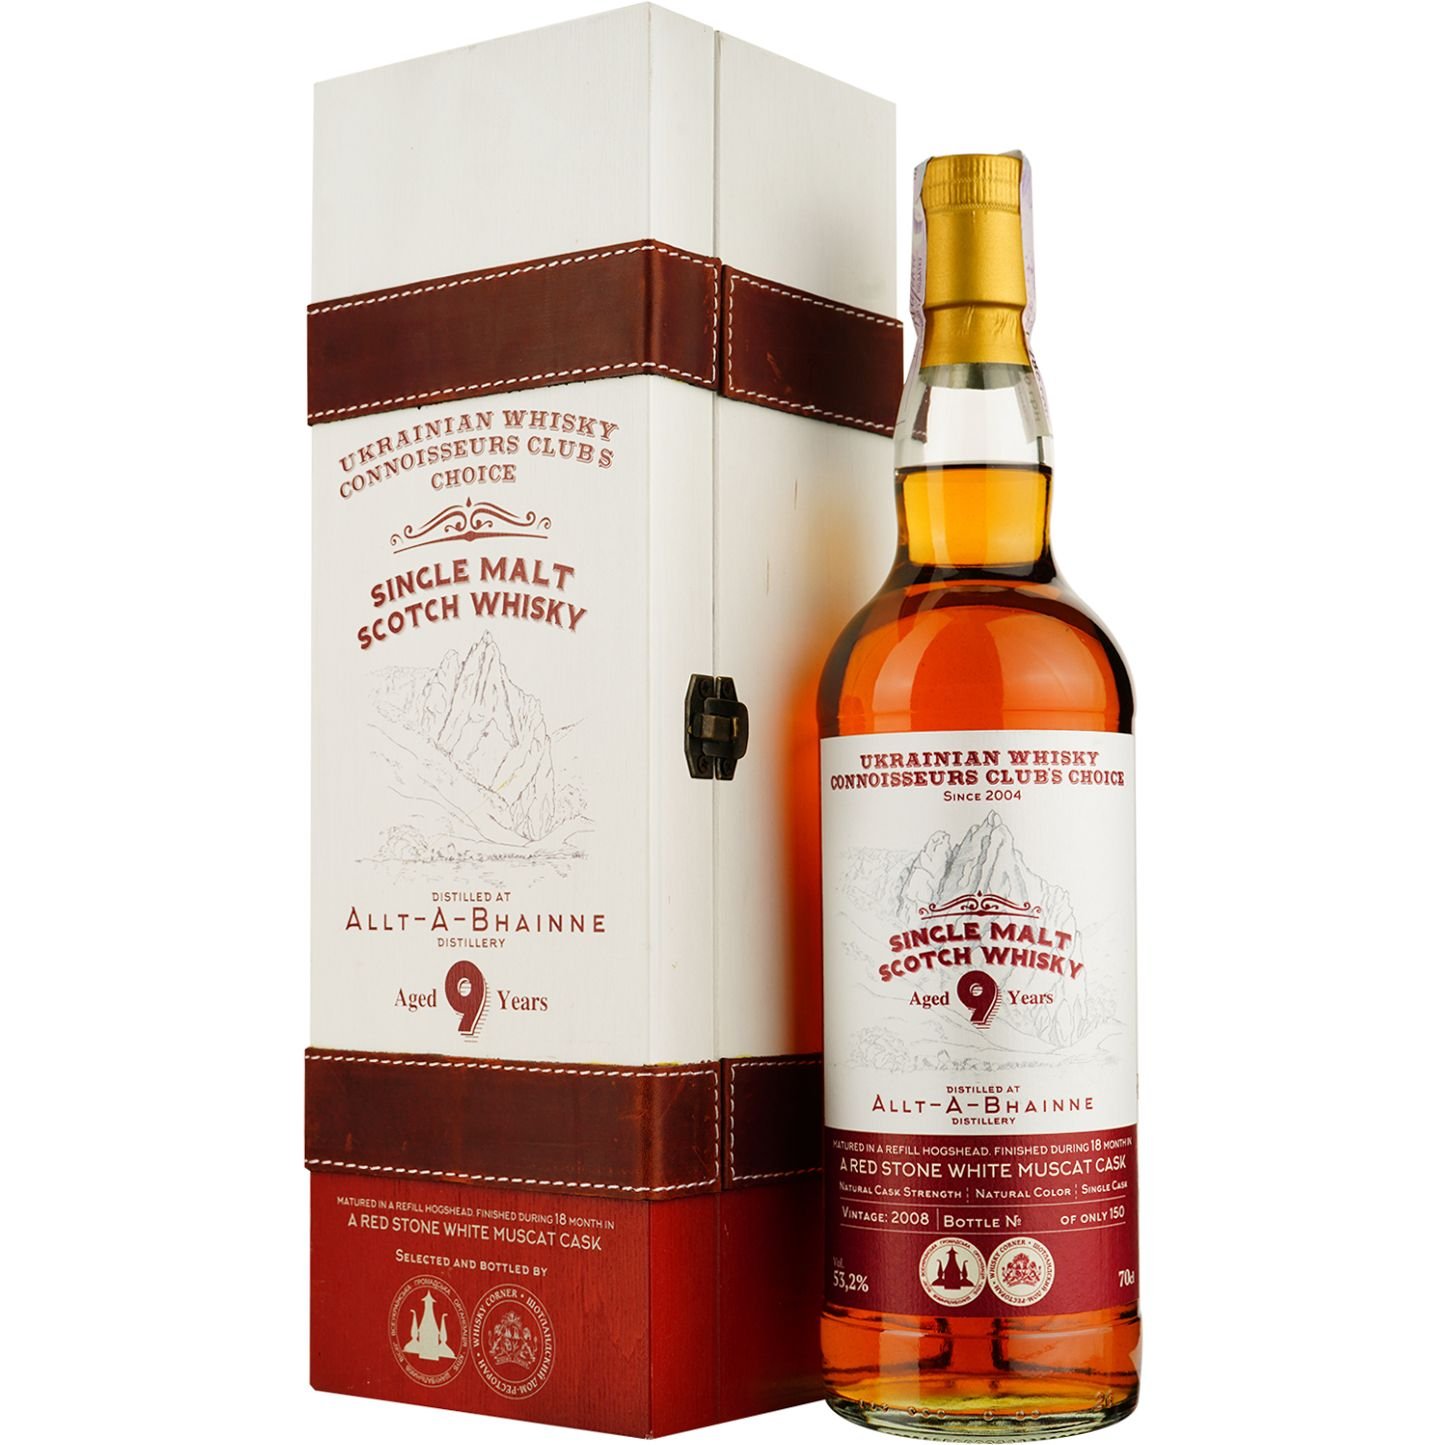 Віскі Allt-A-Bhainne 9 Years Old White Muscat Red Stone Single Malt Scotch Whisky, у подарунковій упаковці, 53,2%, 0,7 л - фото 1